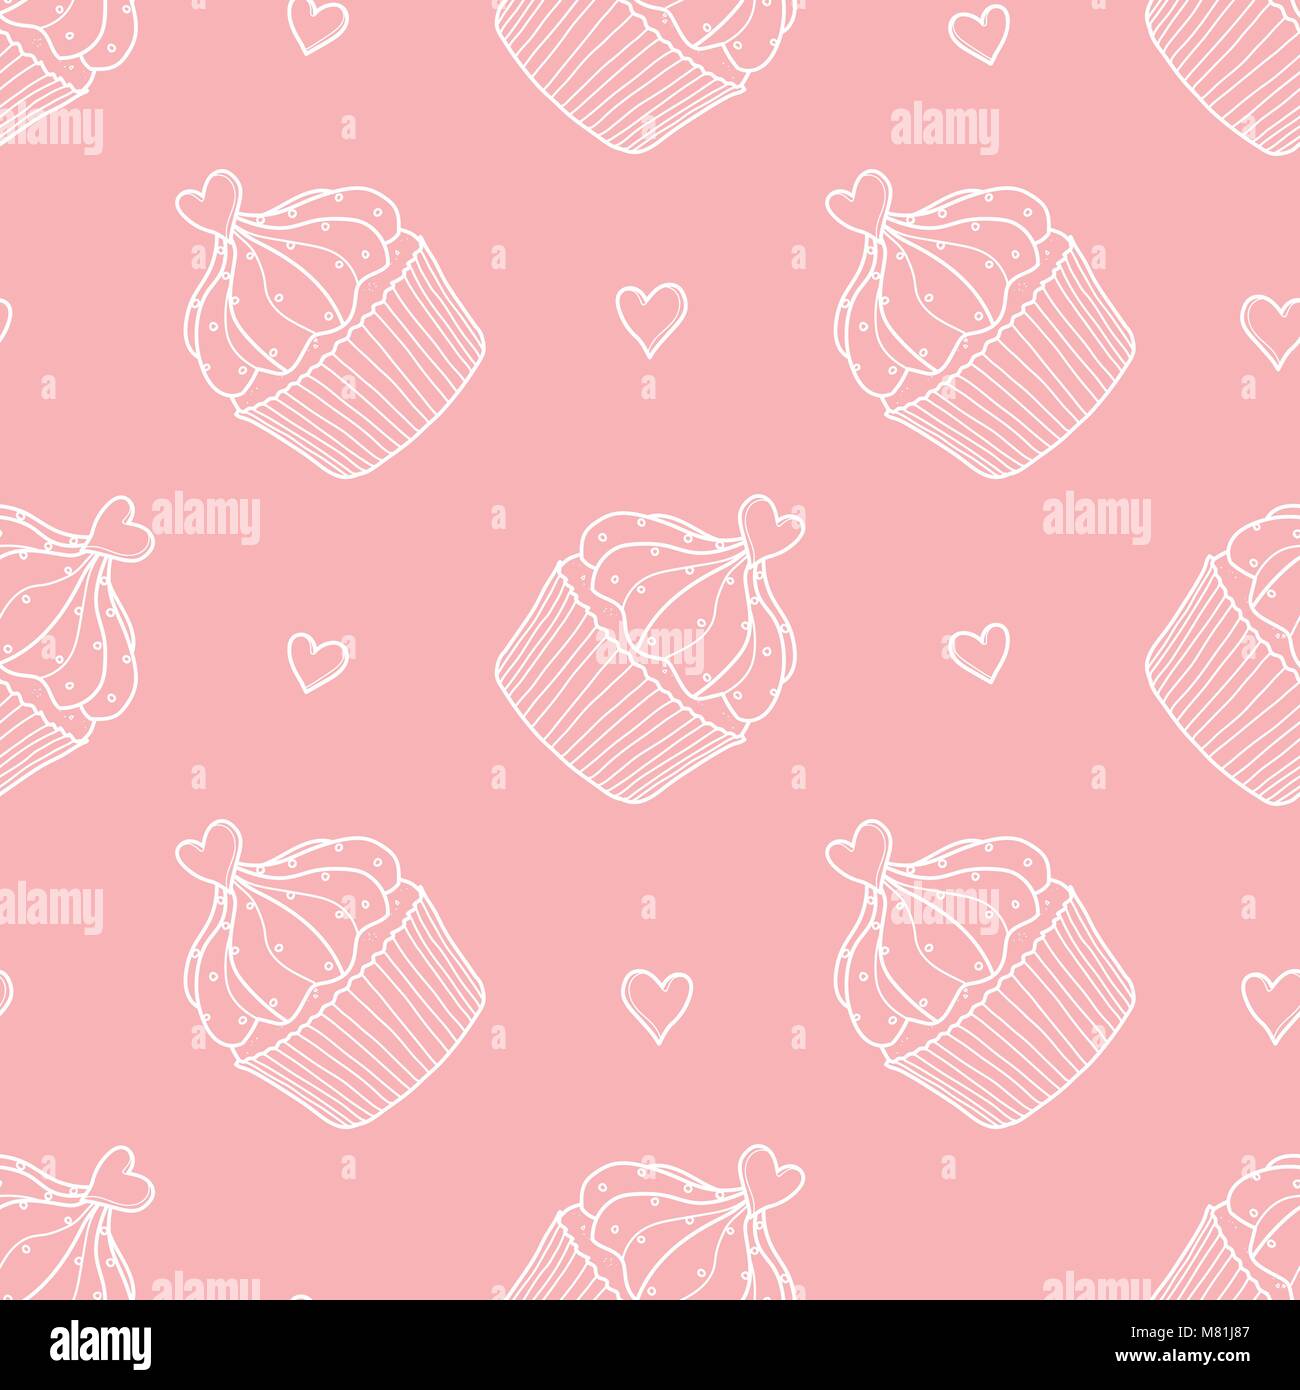 Cupcakes und Herzen random auf rosa Hintergrund. Süße Hand gezeichnet nahtlose Muster von Dessert in weißer Umriss. Stock Vektor